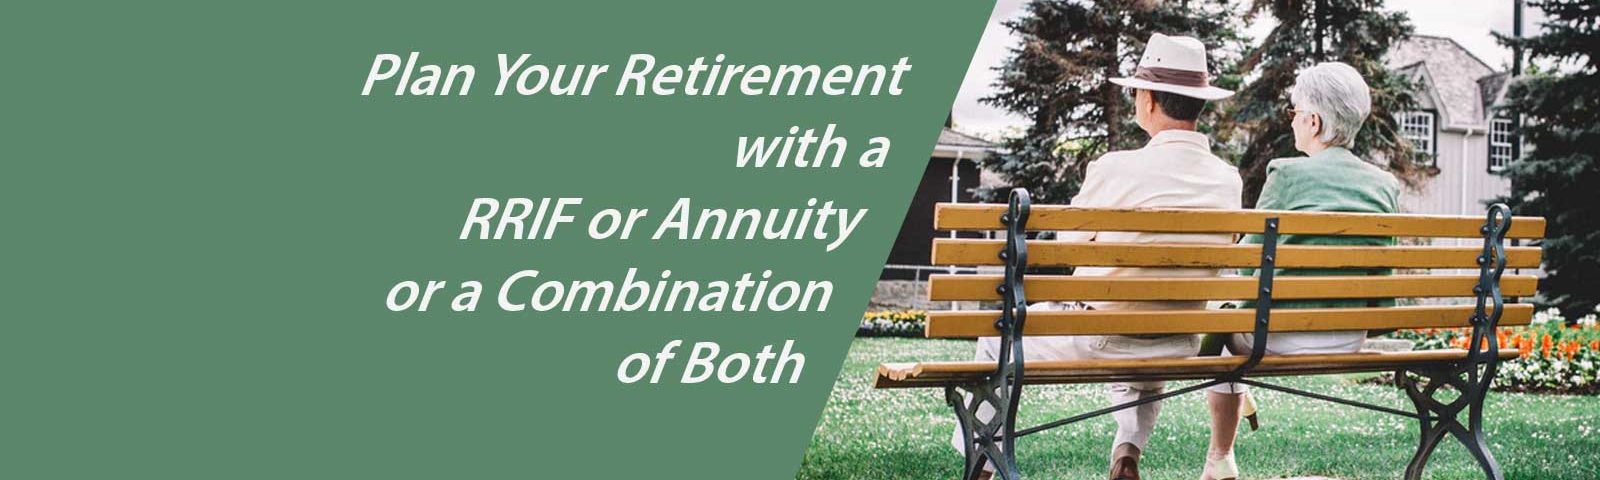 plan retirement rrif annuity